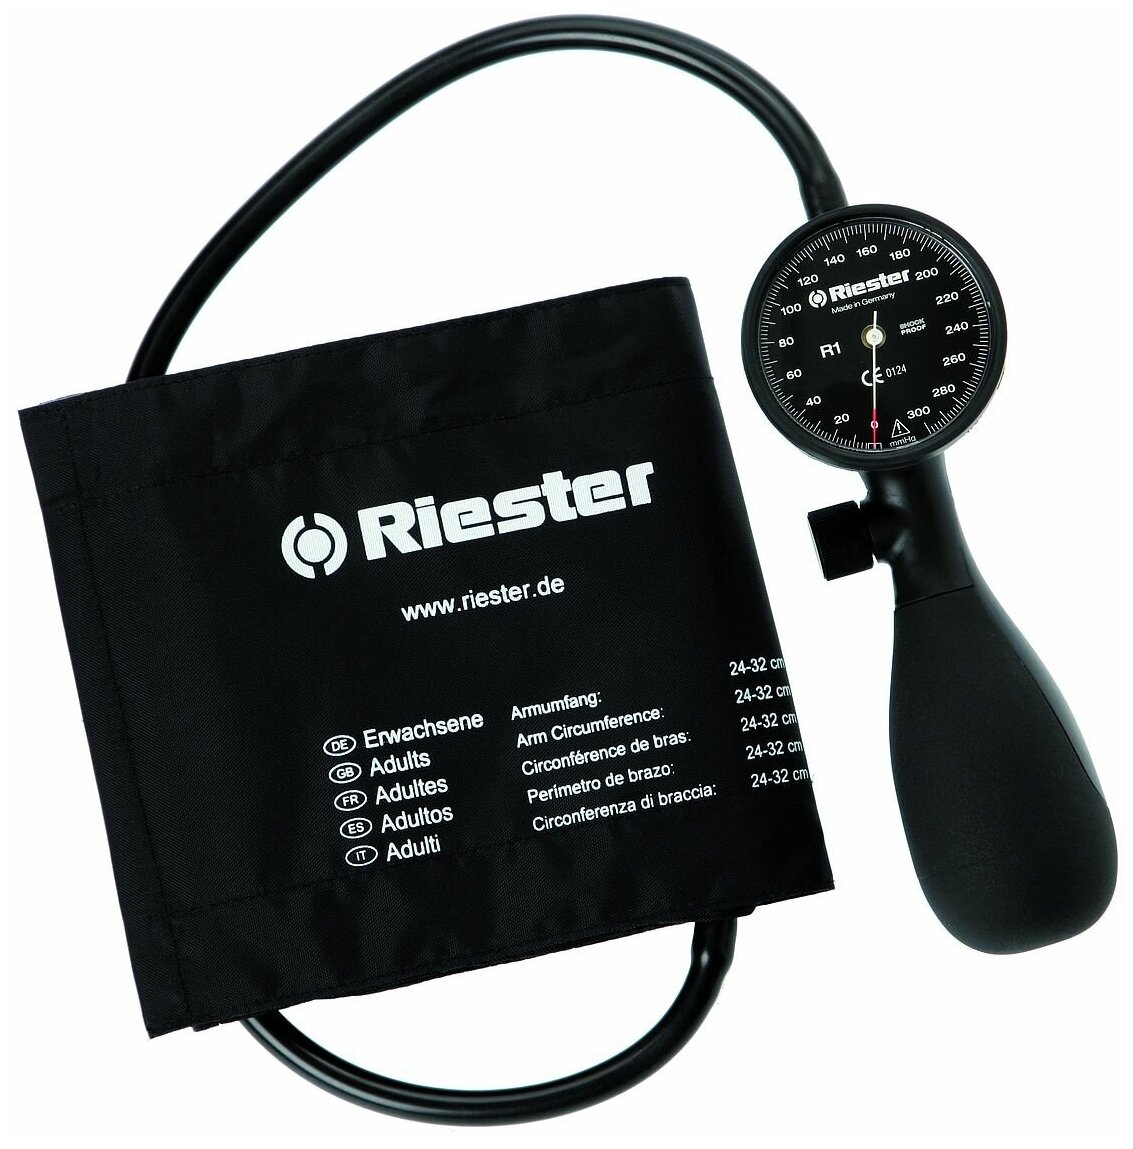 Riester Тонометр механический (анероидный) shock-proof, черный, 1 шланговый, манжета стандарт 1250-107 R1